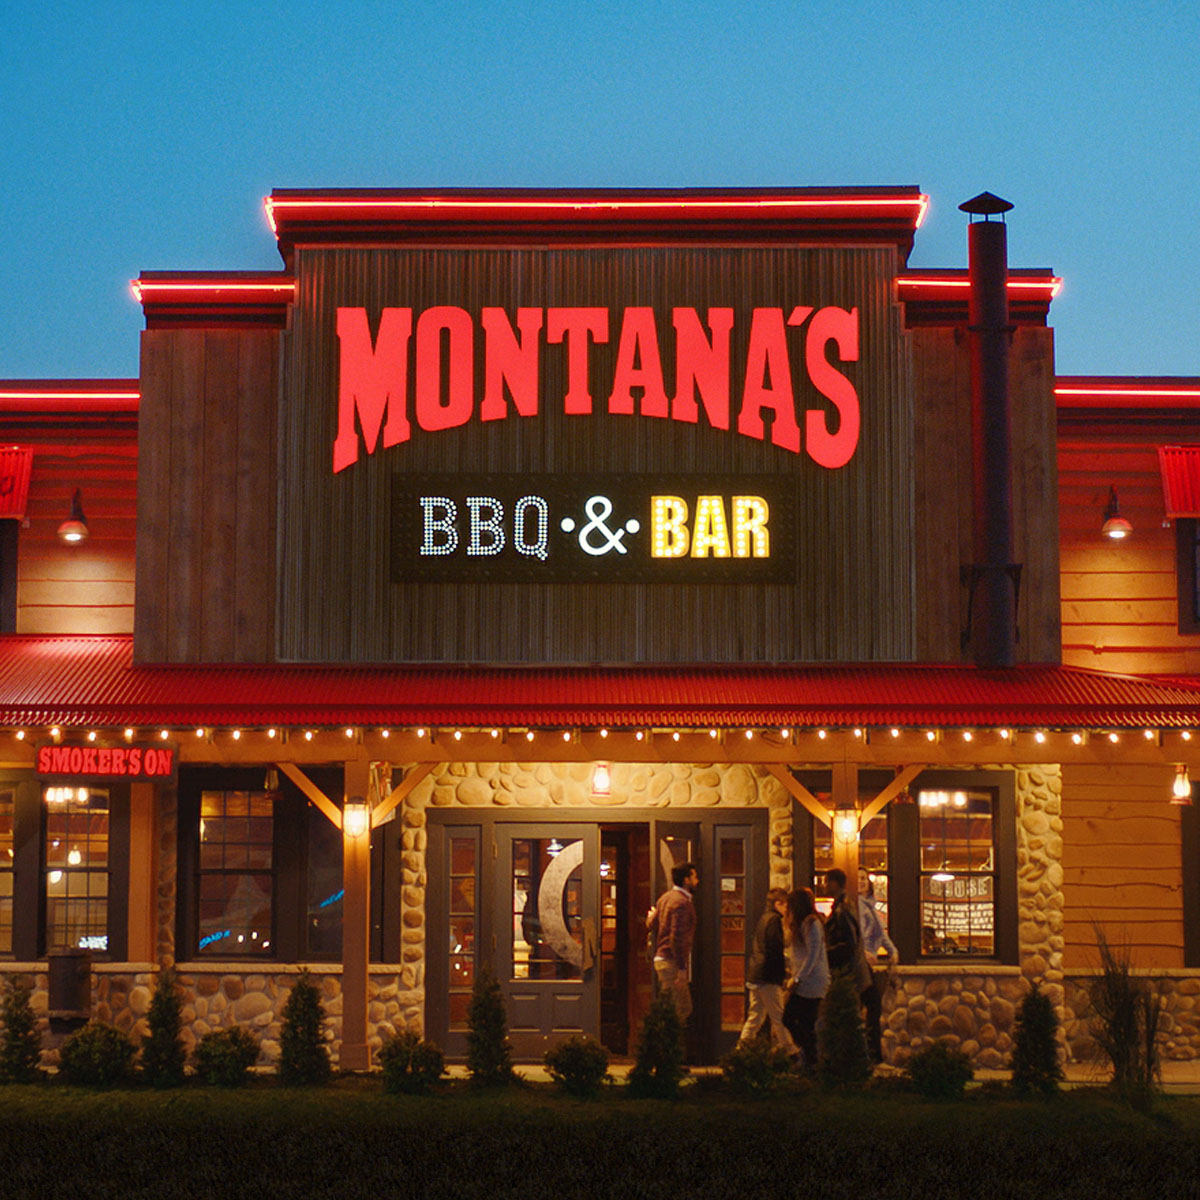 Montana's BBQ & Bar Restaurant